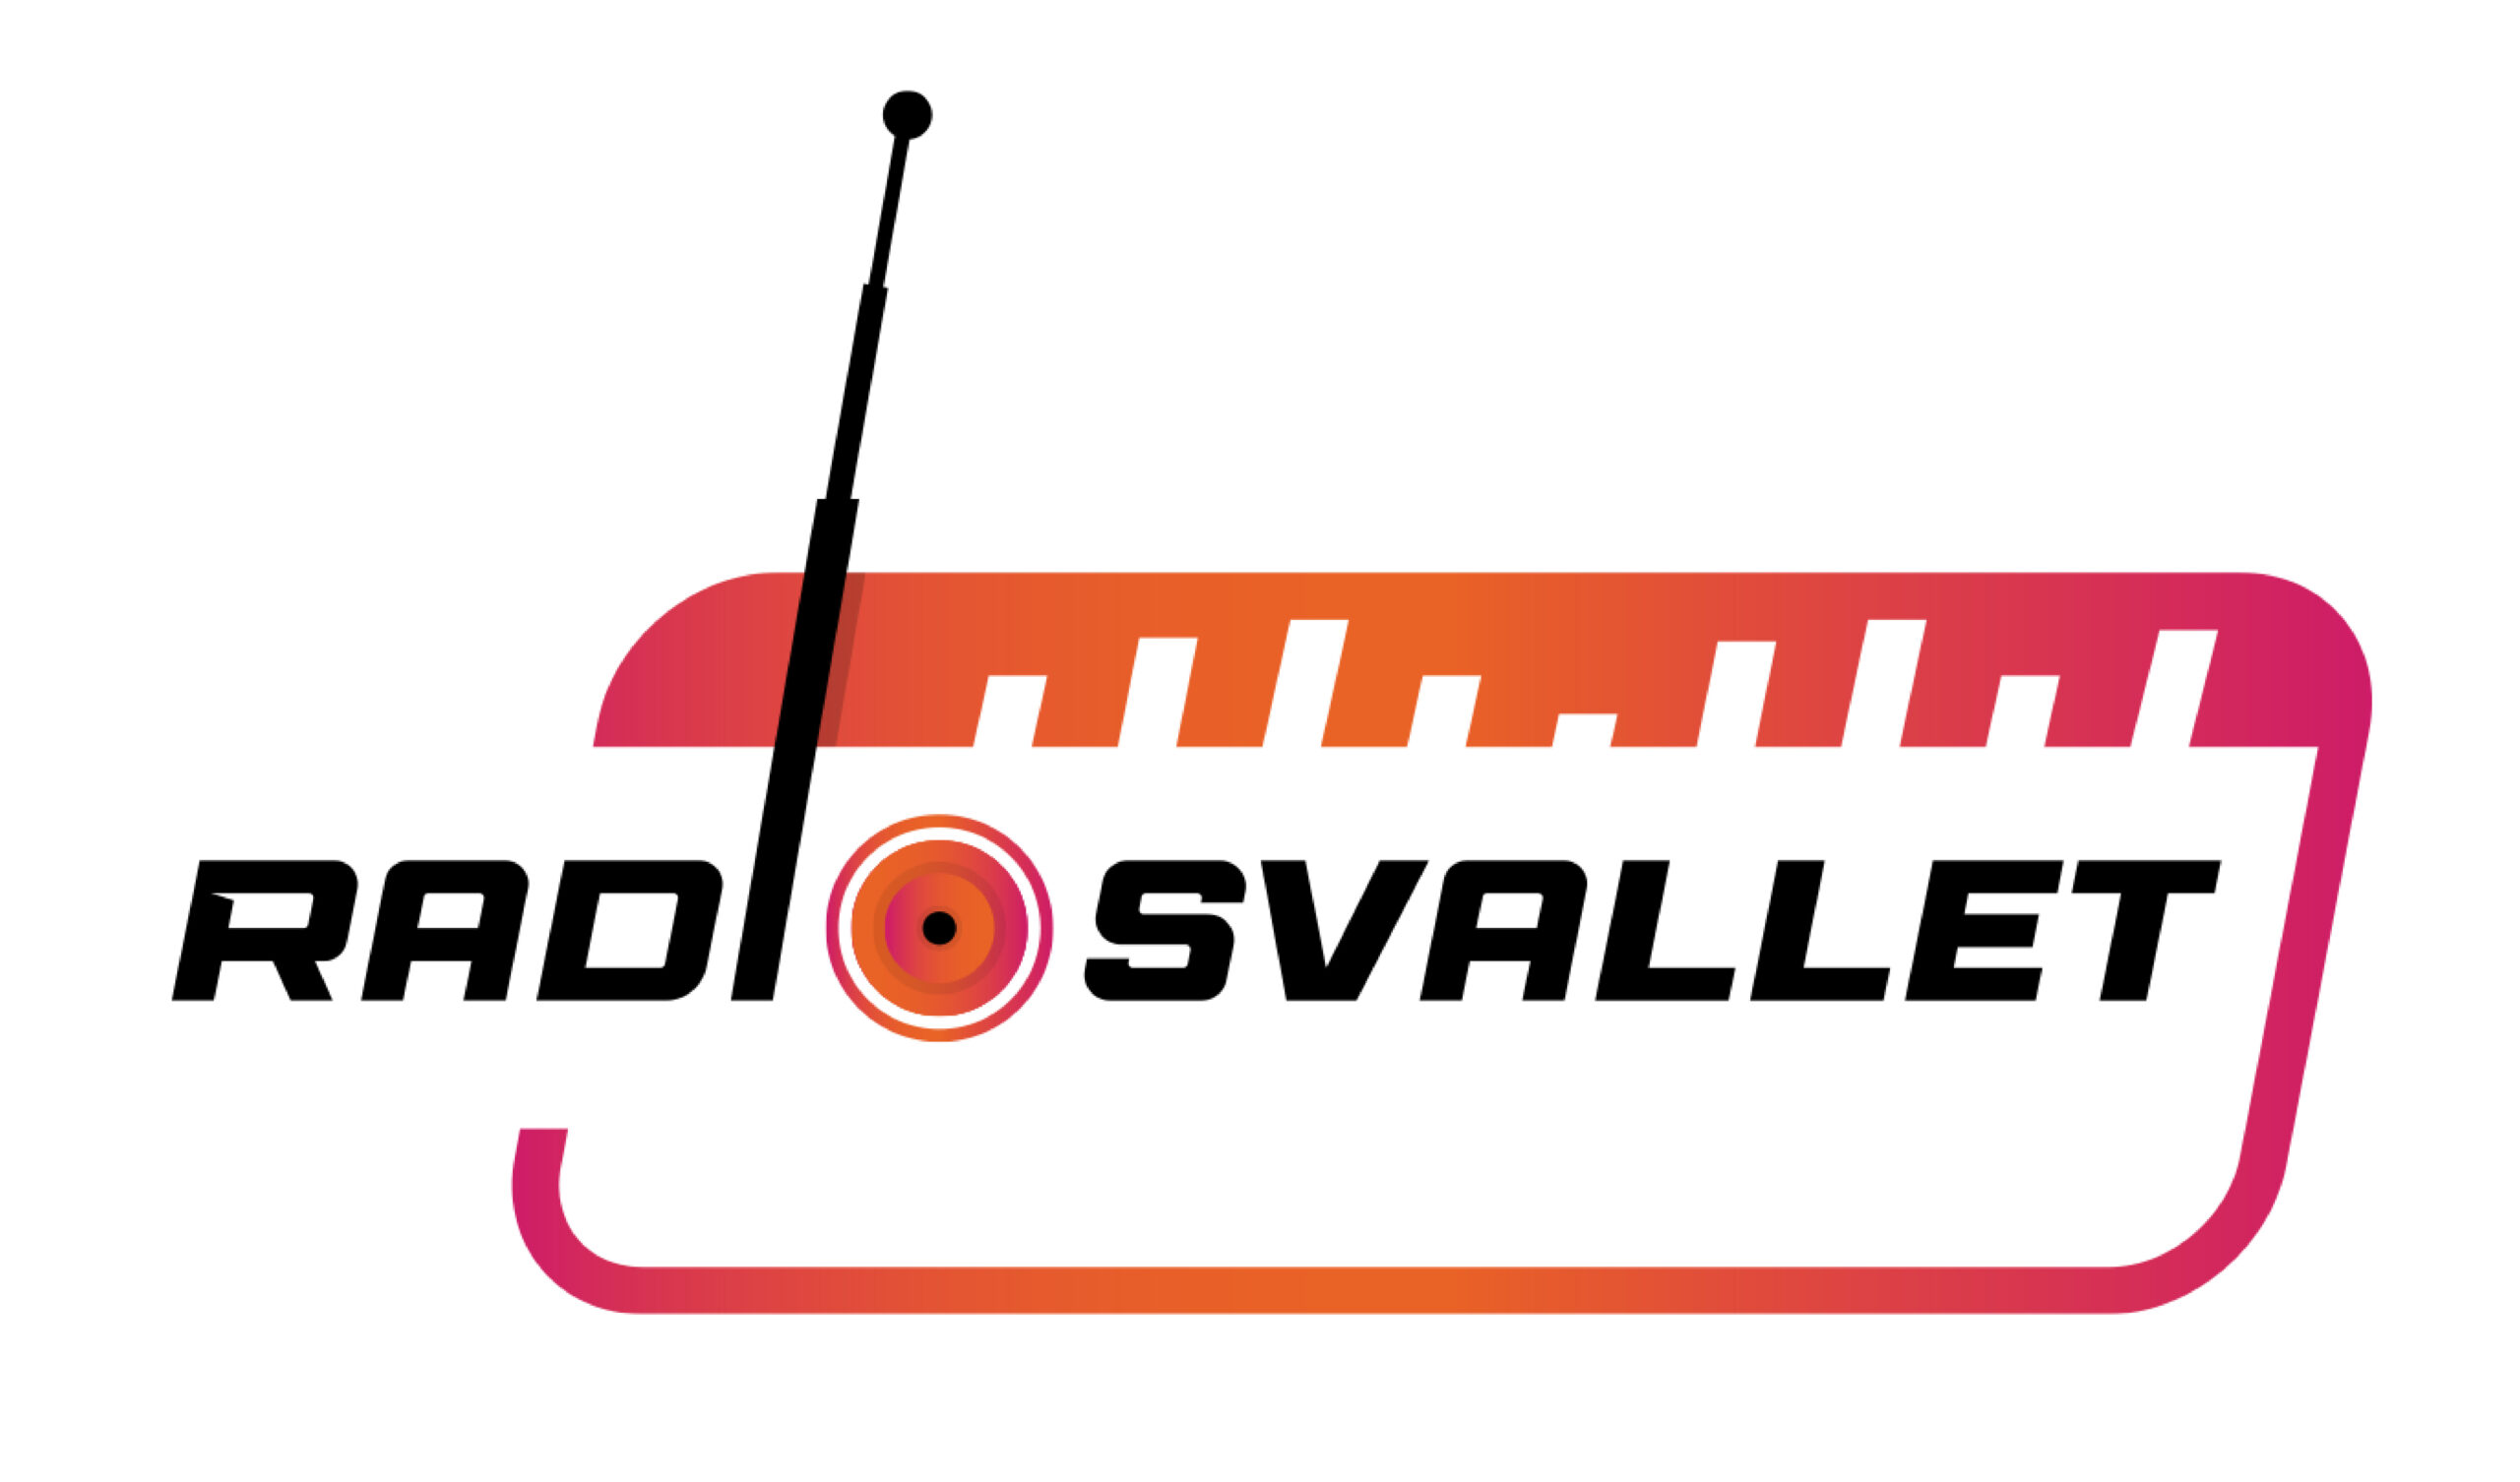 Radiosvallet (Sundsvall)